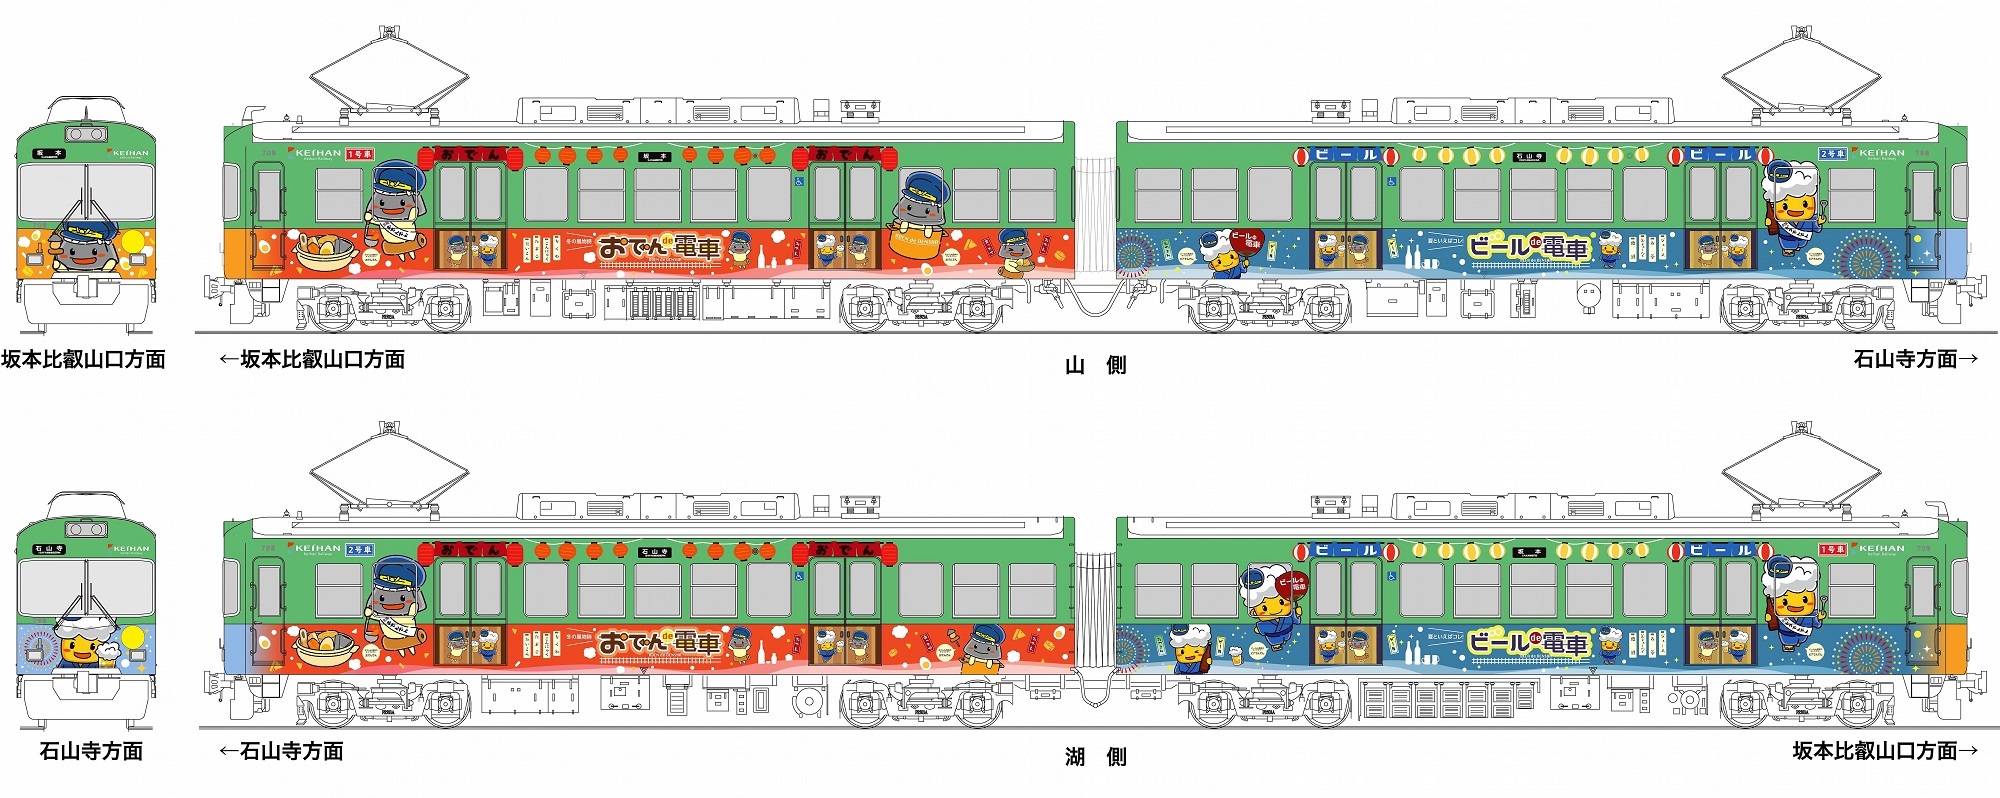 ～700形車両に可愛らしいキャラクターをラッピング～ 
「おでんｄｅ電車」＆「ビールｄｅ電車」の
ラッピング電車を2019年1月17日(木)から運転します